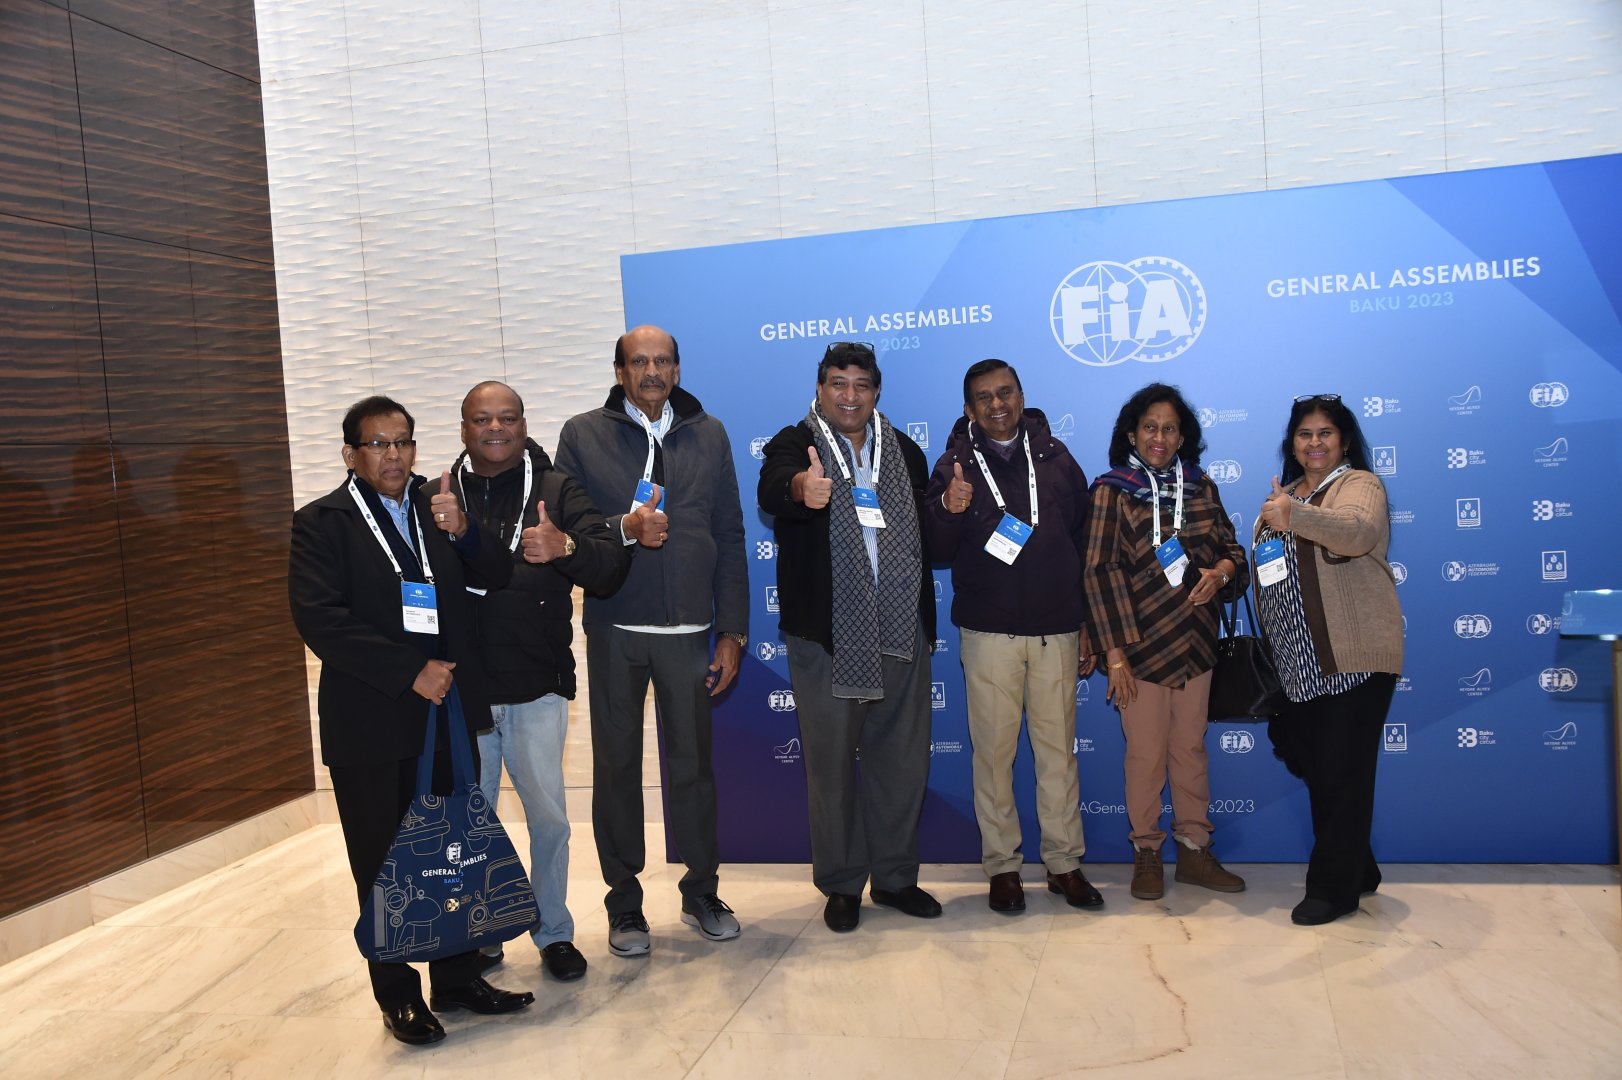 В Баку начались заседания Генеральной ассамблеи FIA (ФОТО)